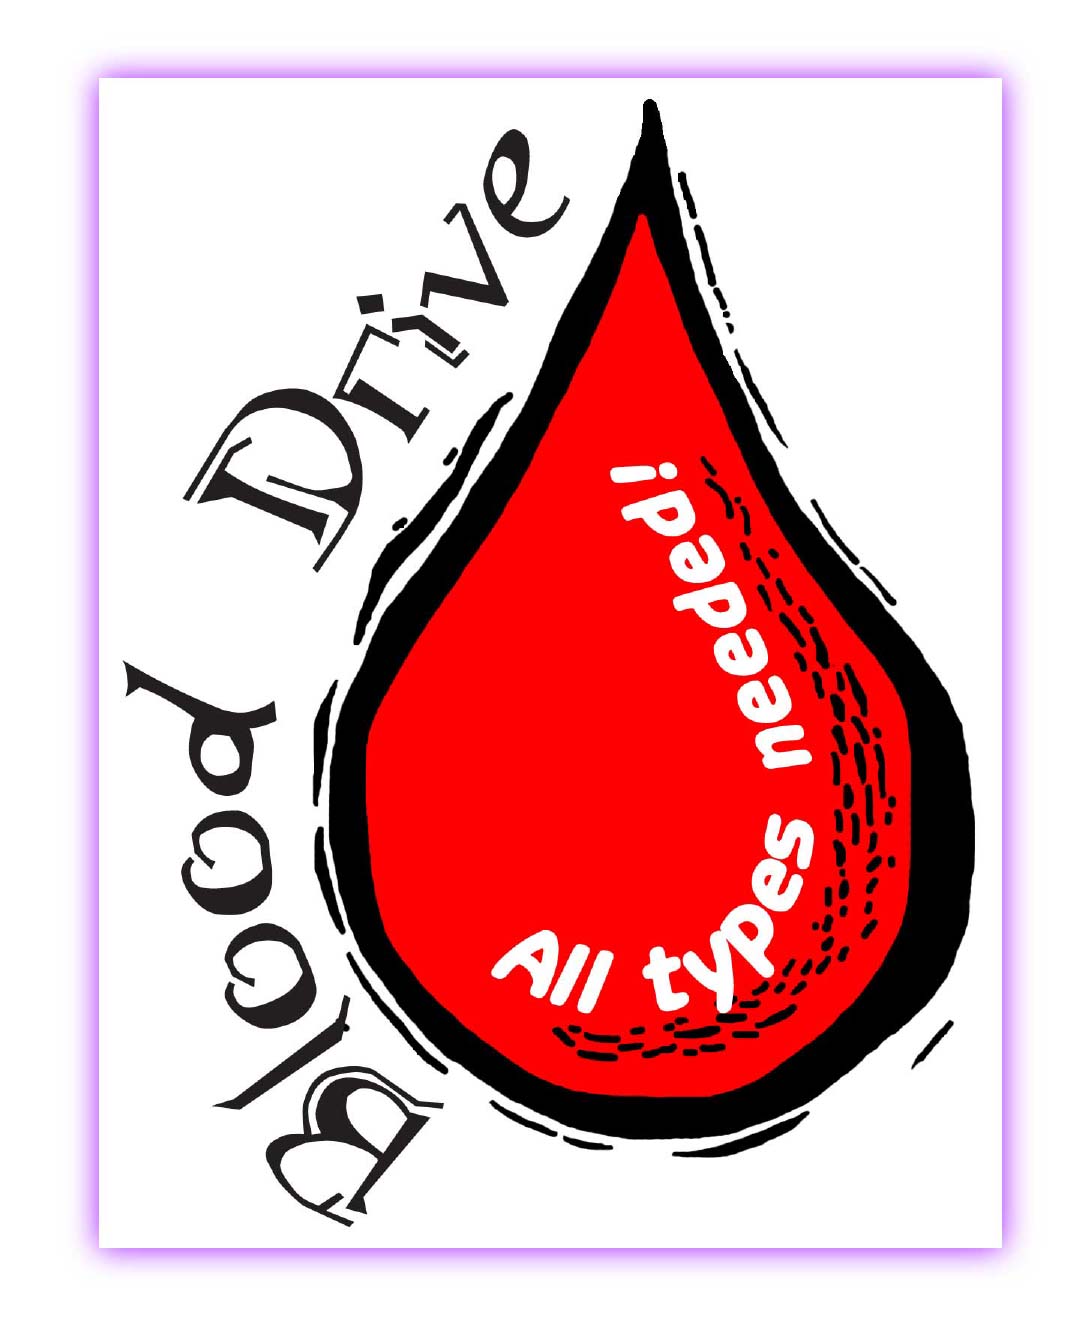 Blood Drive Images - ClipArt Best